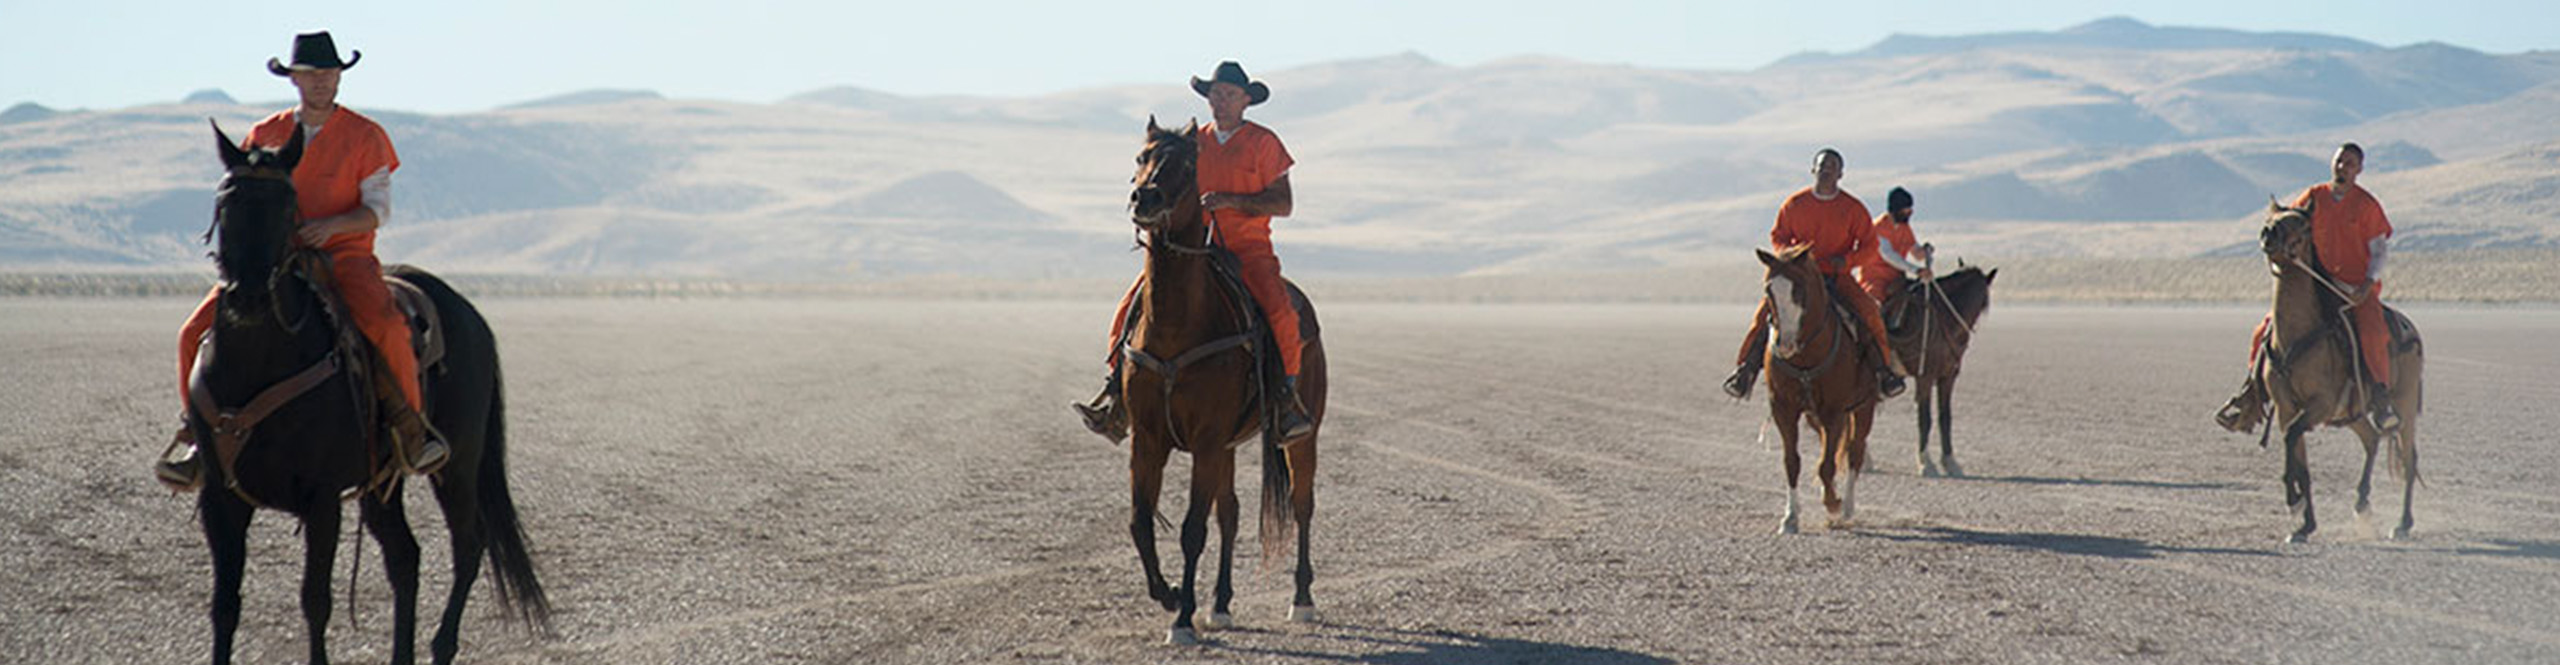 Filmcyclus: Zingeving en acceptatie – ‘The Mustang’